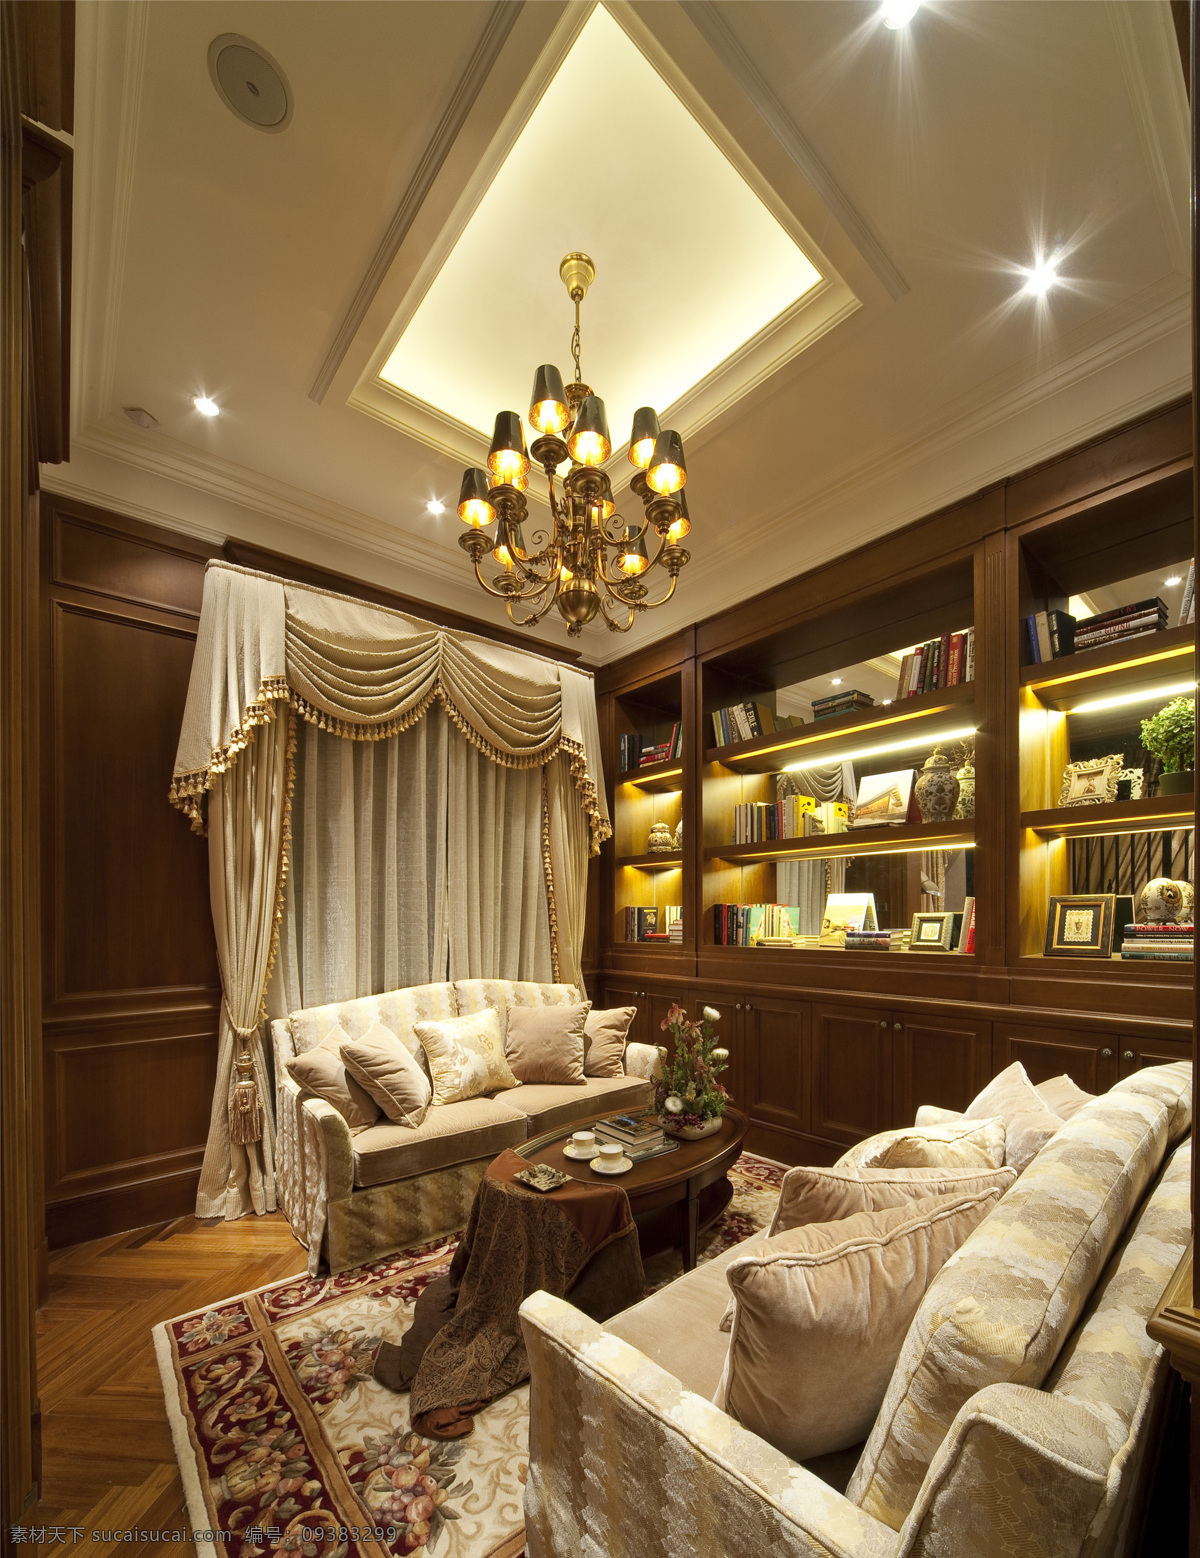 现代 奢华 客厅 金色 吊灯 室内装修 效果图 客厅装修 木制地板 花纹地毯 木制柜子 浅色沙发